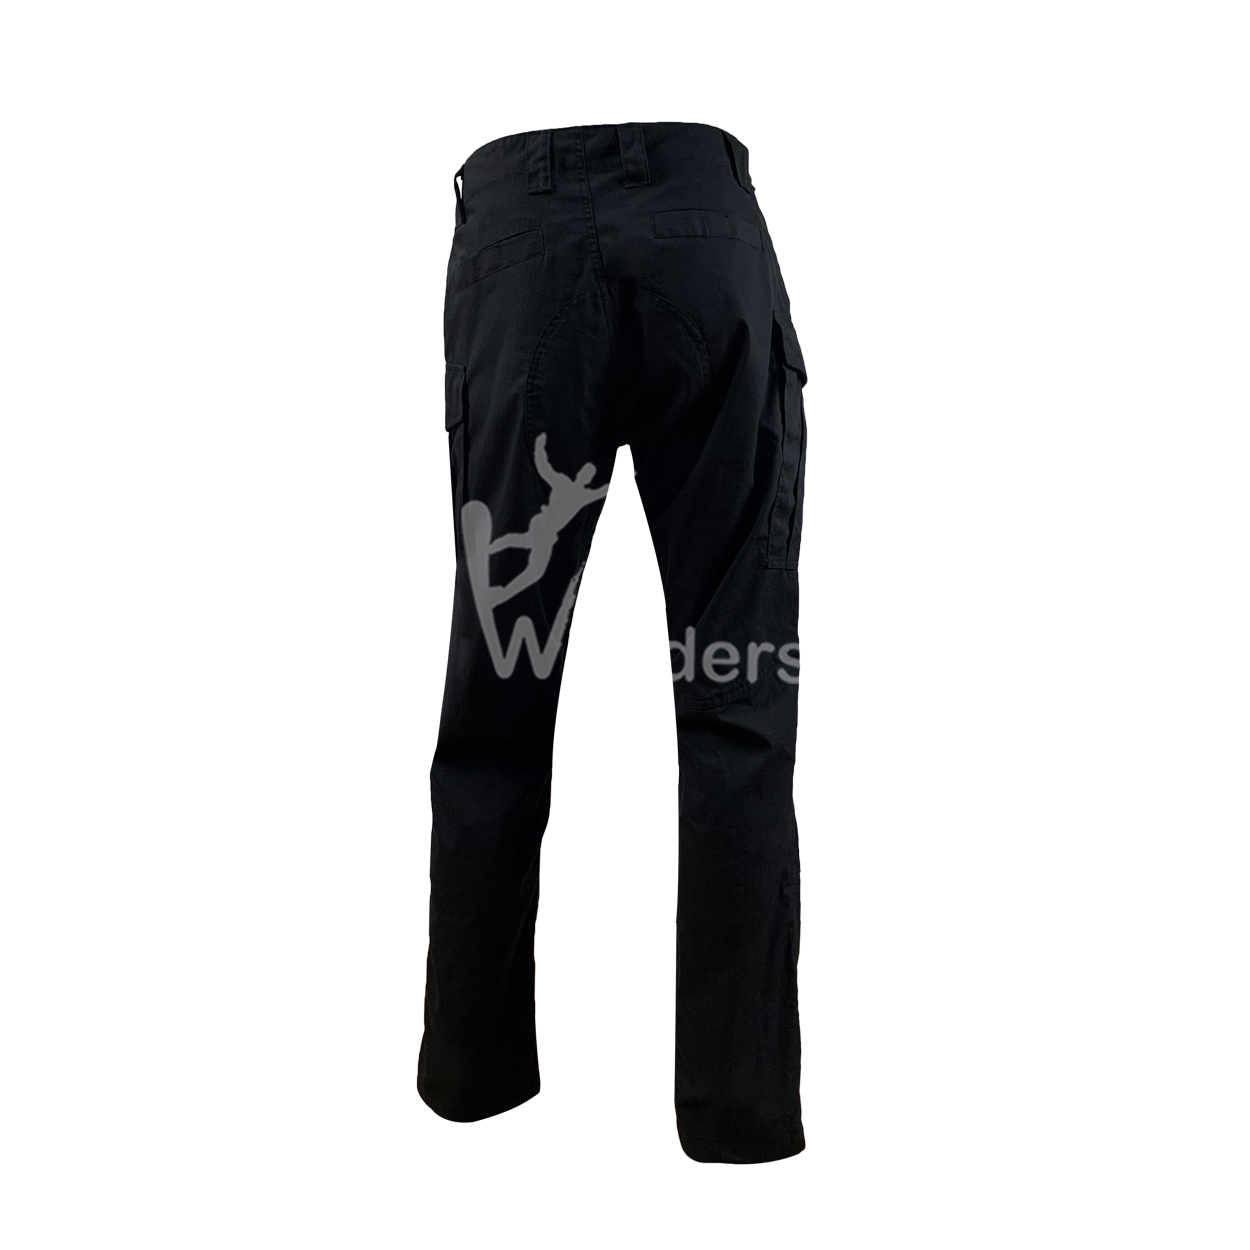 Wonders affordable hiking pants manufacturer for sale-1